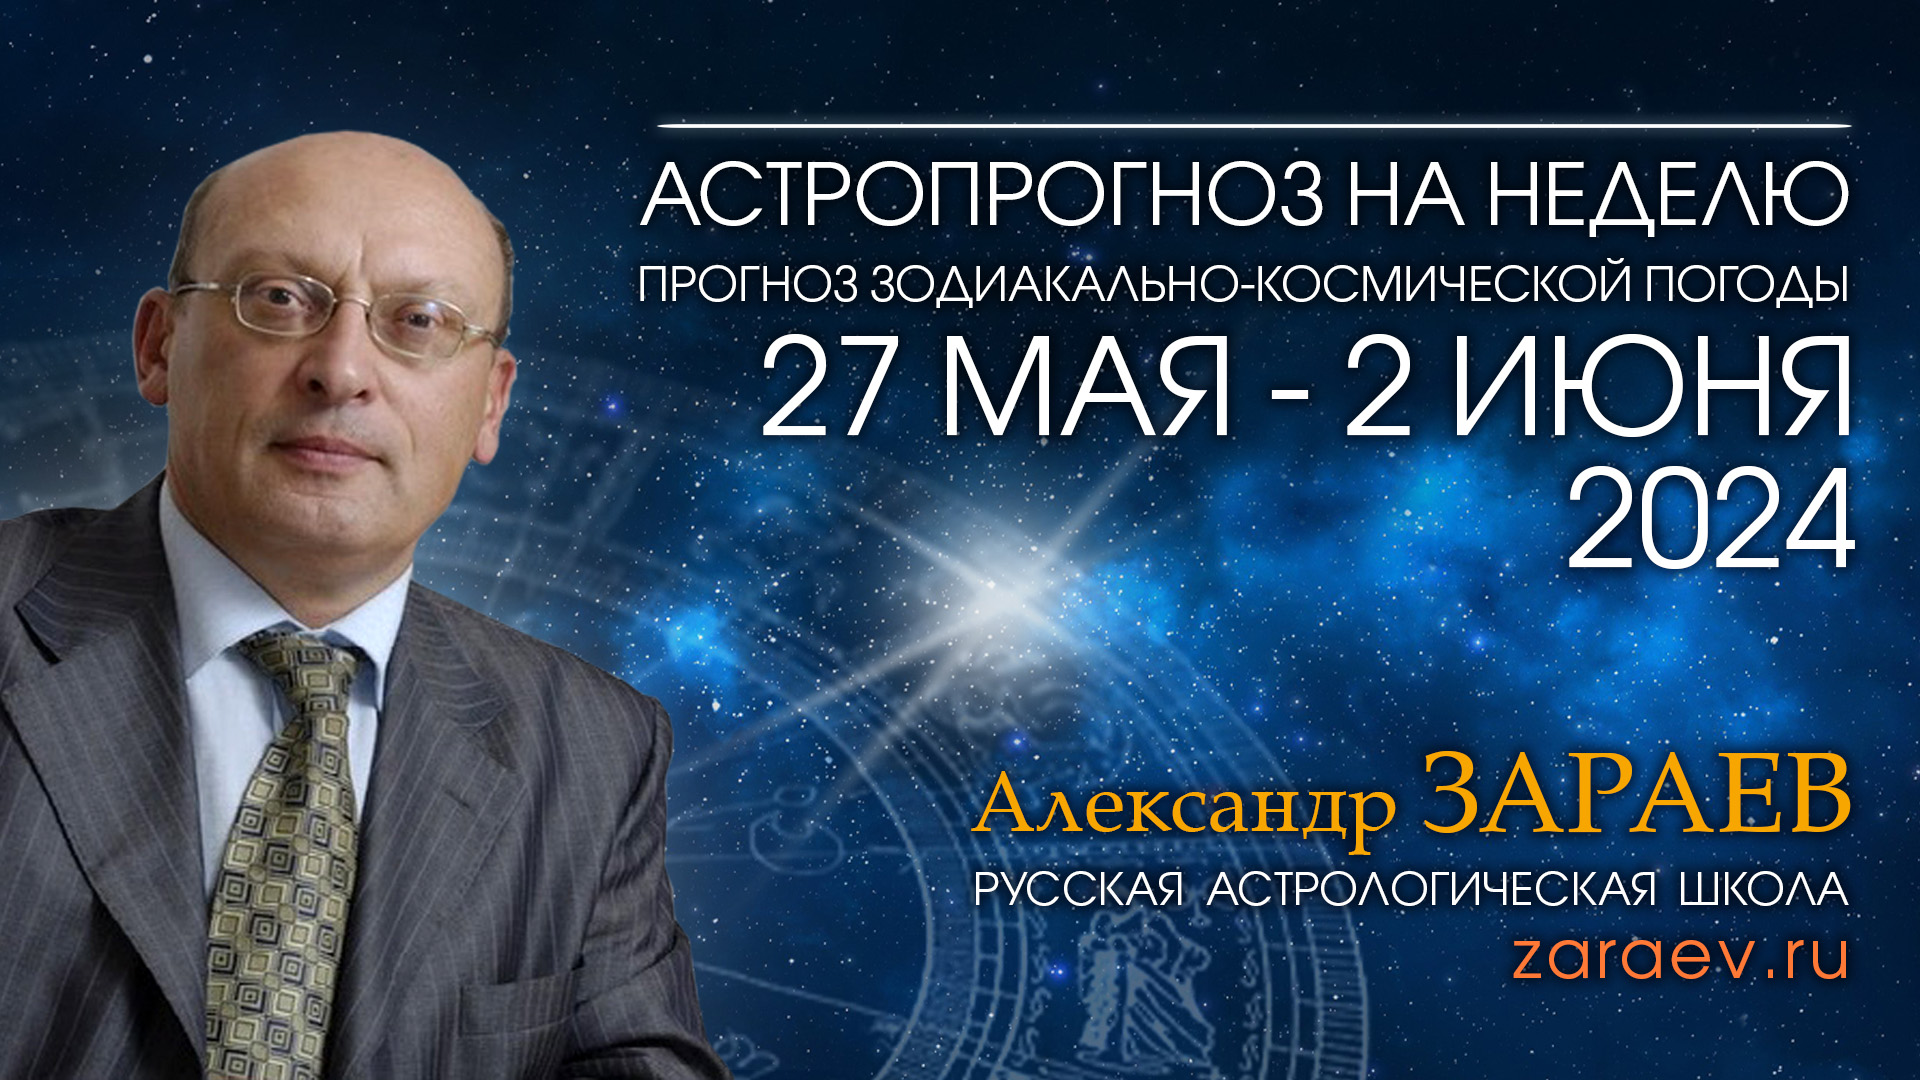 Астропрогноз на неделю с 27 мая по 2 июня 2024 - от Александра Зараева